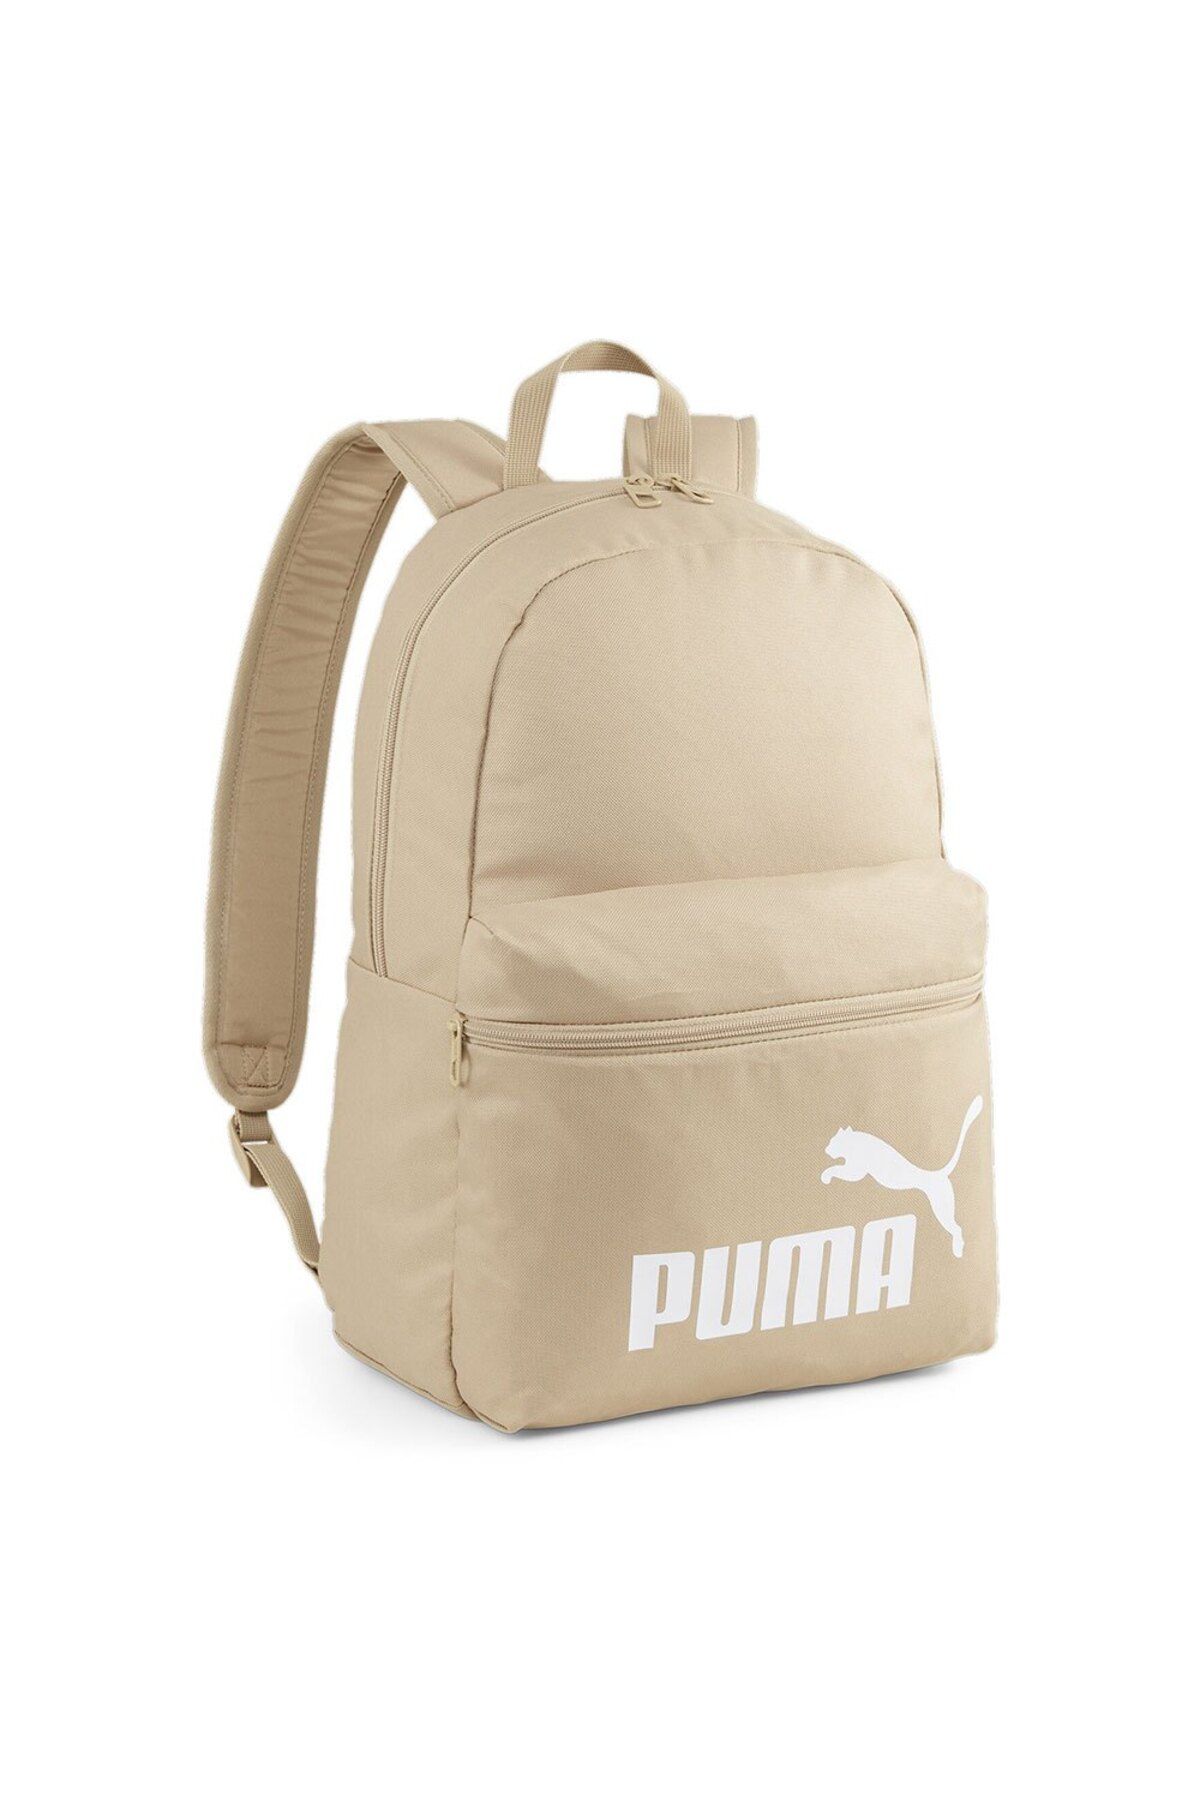 Puma Academy Backpack07913324